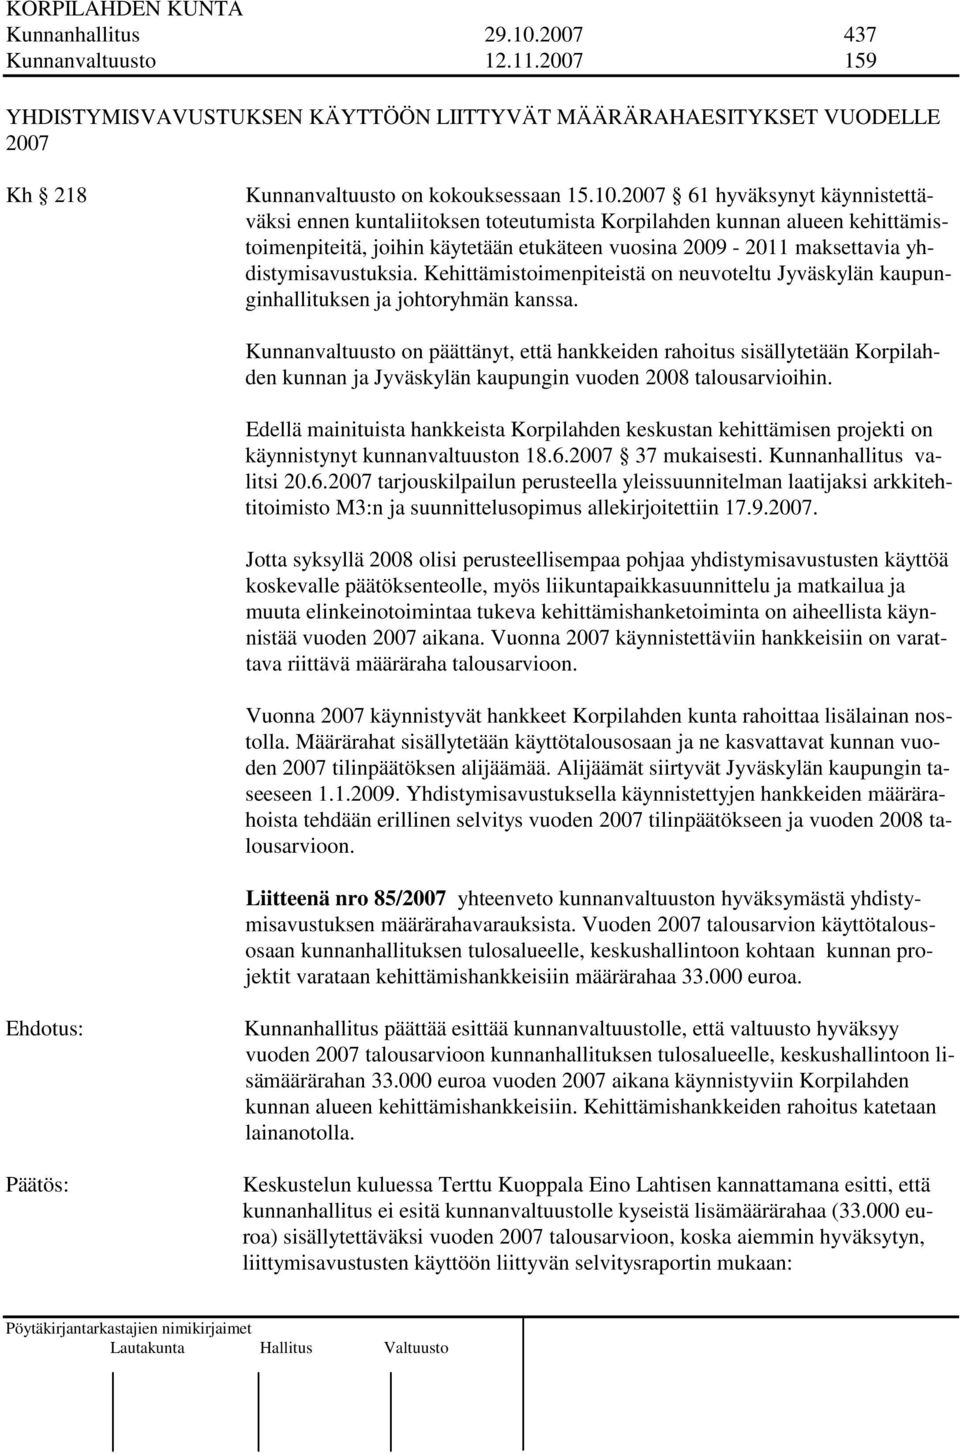 2007 61 hyväksynyt käynnistettäväksi ennen kuntaliitoksen toteutumista Korpilahden kunnan alueen kehittämistoimenpiteitä, joihin käytetään etukäteen vuosina 2009-2011 maksettavia yhdistymisavustuksia.